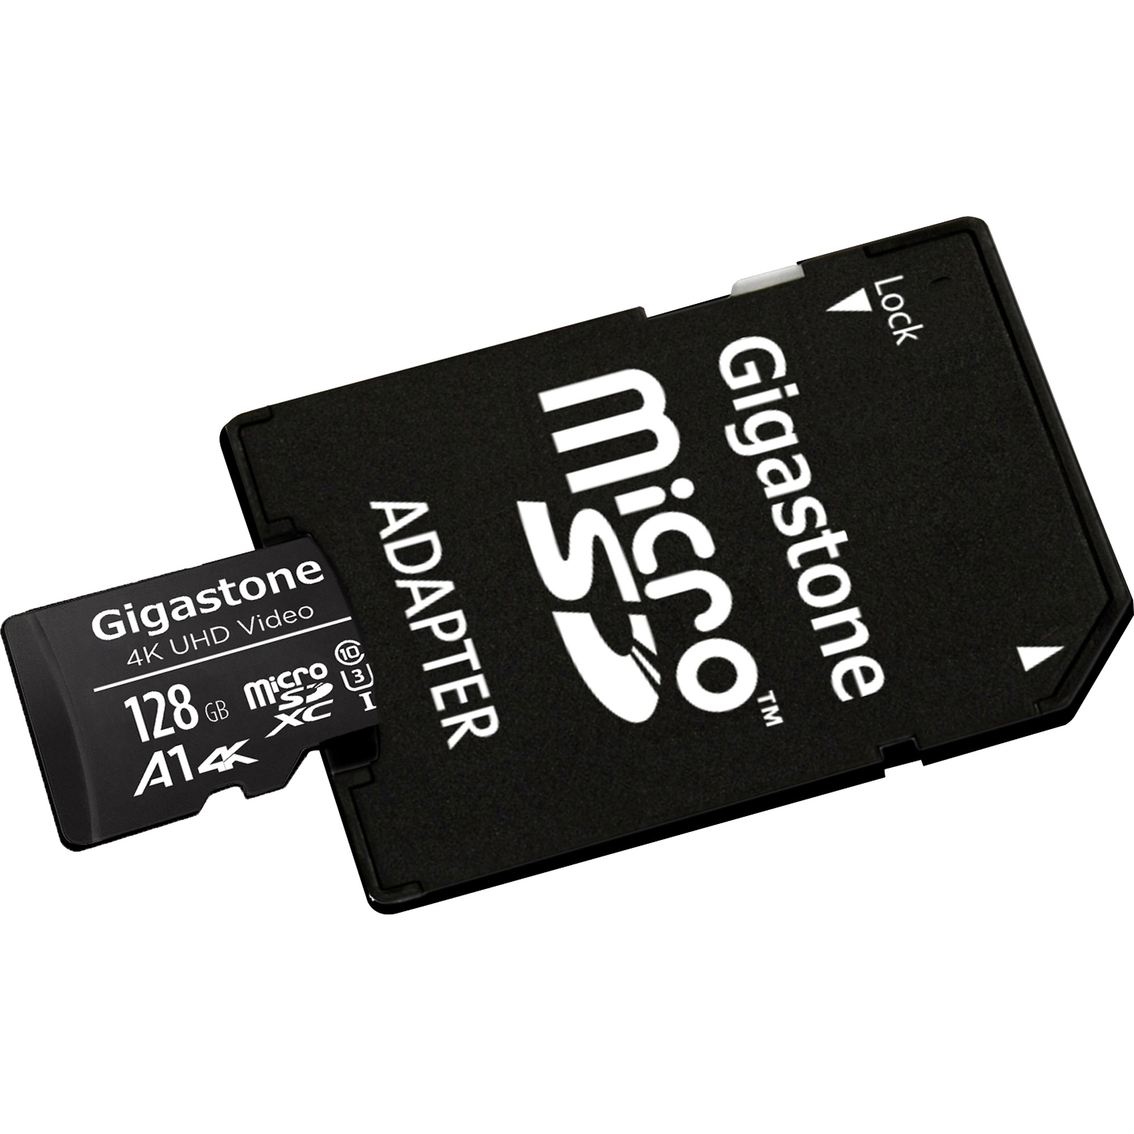 Gigastone 128GB Prime Series microSD Card 4-in-1 Kit - Image 4 of 6